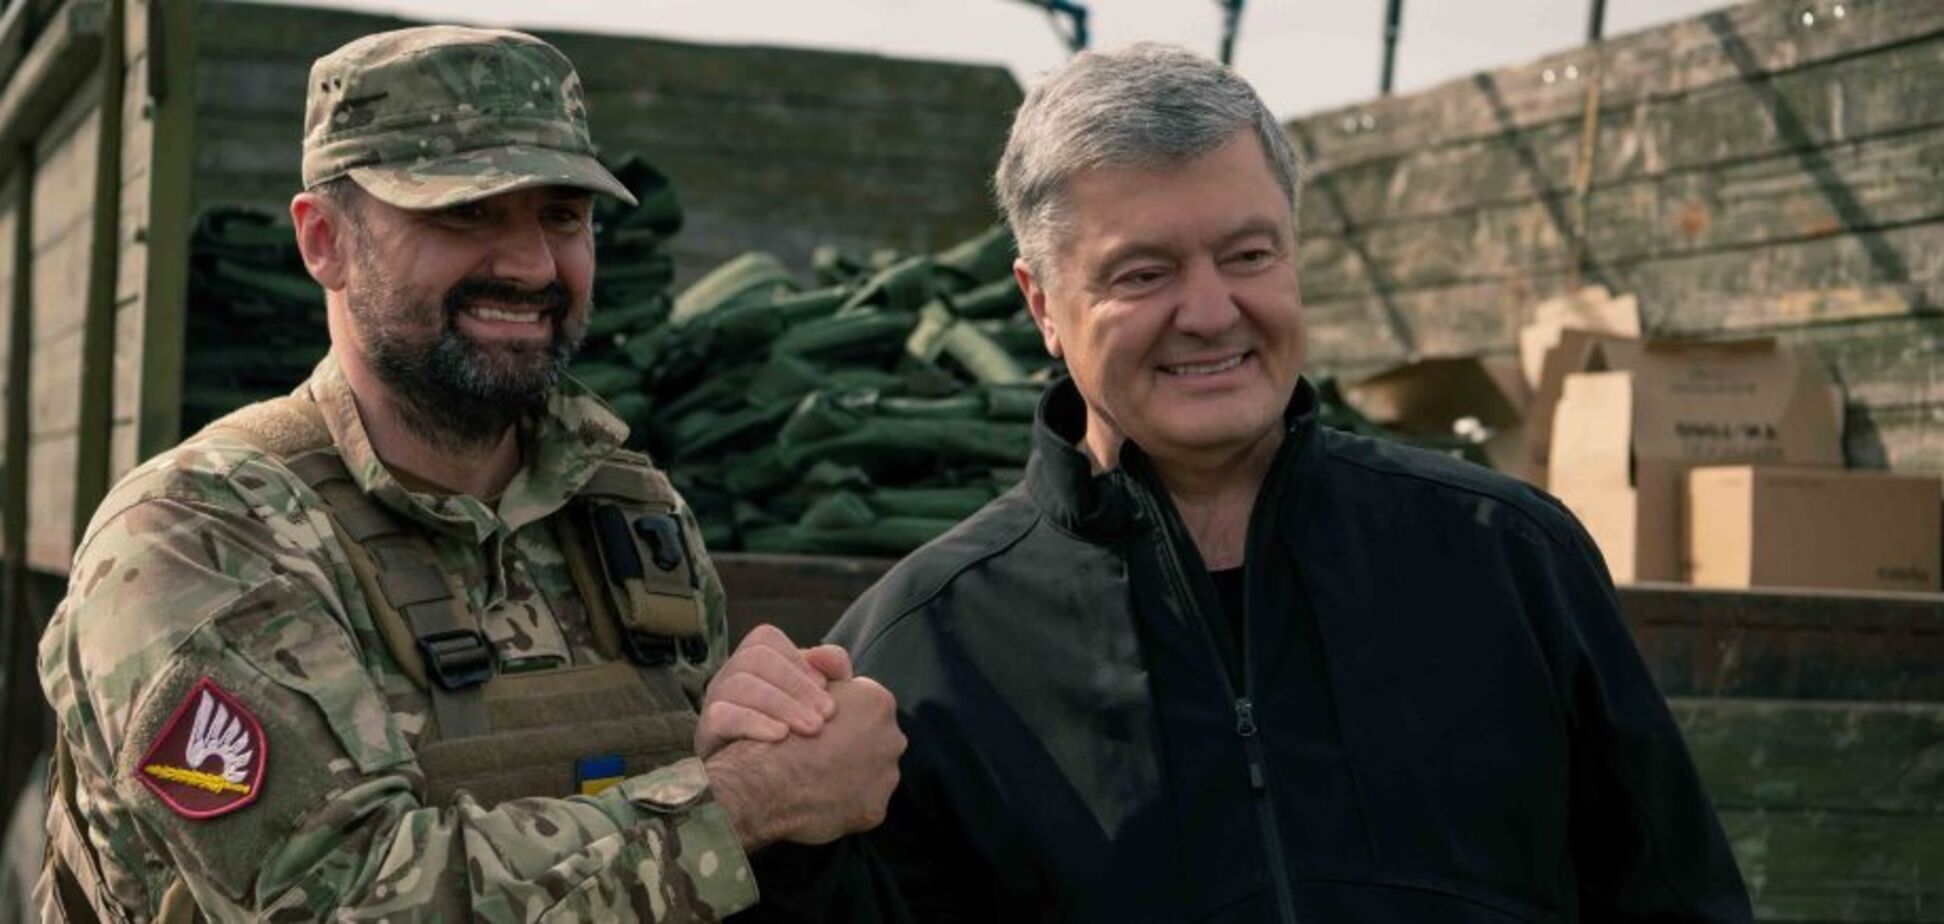 Делаем все возможное, чтобы враг был разбит, – Порошенко привез бойцам бронежилеты, средства связи и 'кое-что из оружия'